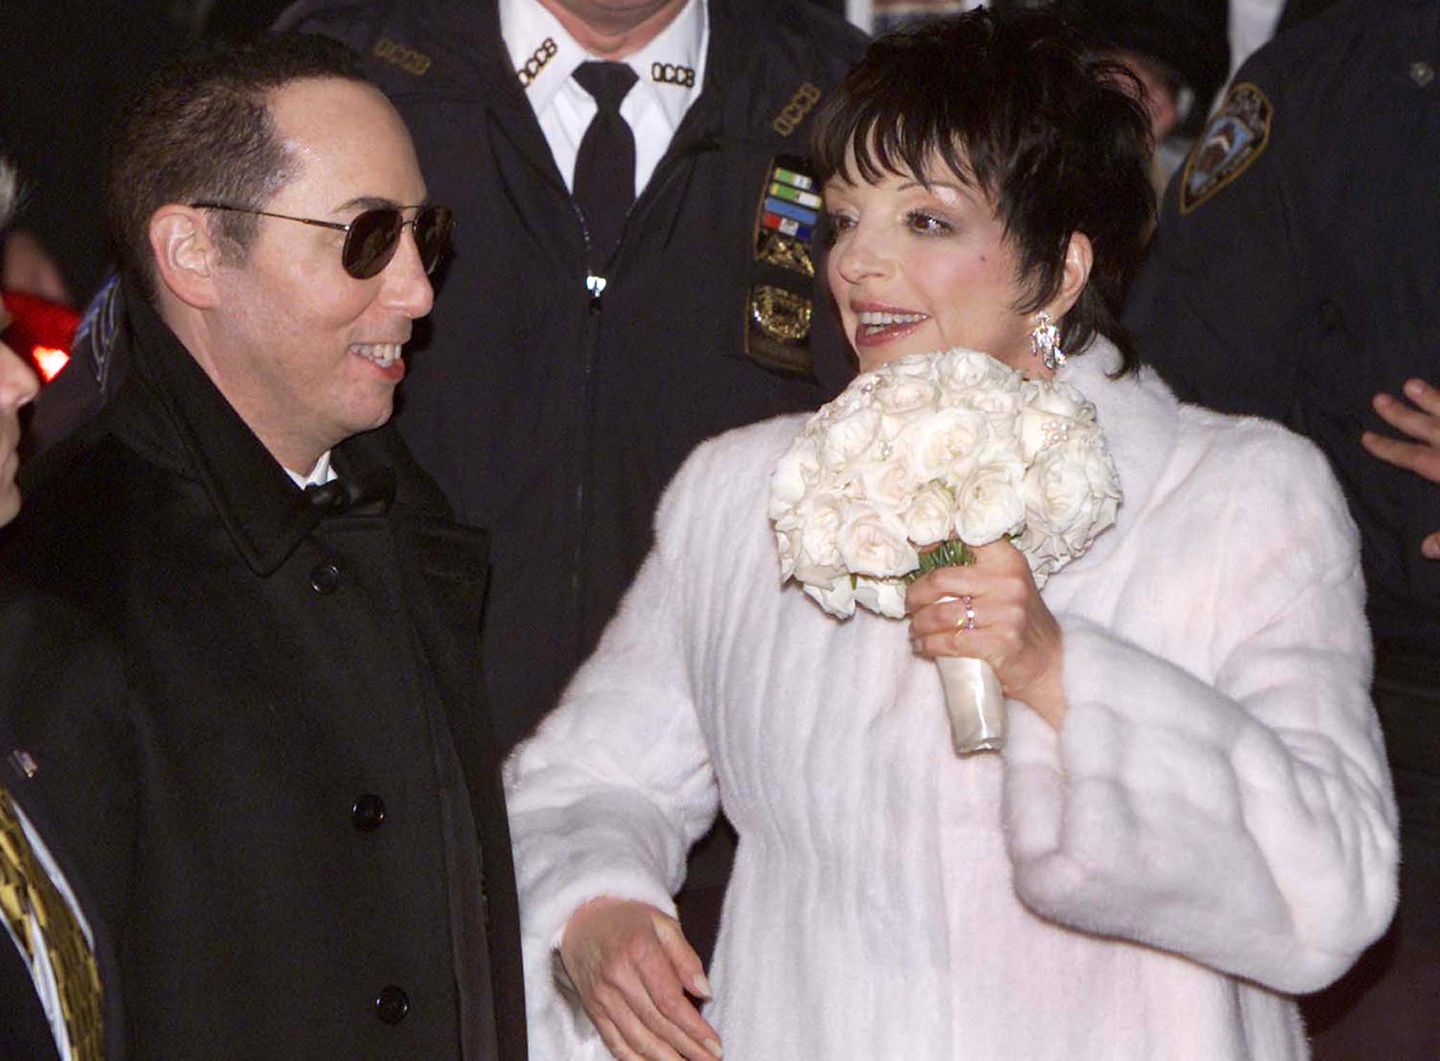 2002: Liza Minnelli  Schon Anfang des Jahrtausends legte Liza Minnelli (bei ihrer Trauung mit David Gest) mit ihrem Hochzeitskleid die Messlatte hoch. Heute wirken die 45.000 Dollar Kosten für ihren elfenbeinfarbenen Entwurf von Bob Mackey jedoch fast schon sparsam.